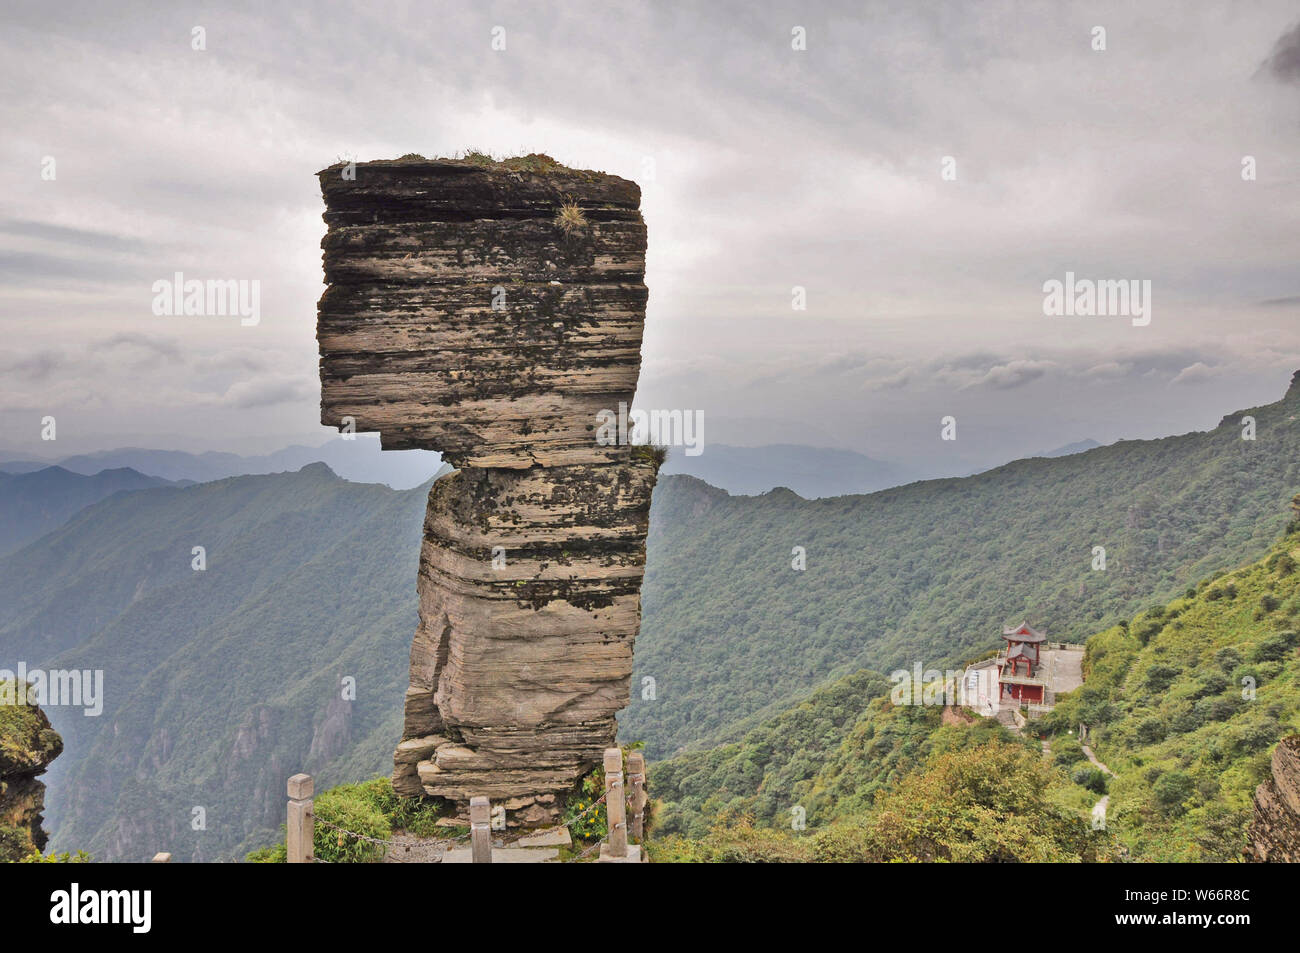 Landschaft des Pilzes Stein auf den Berg in Fanjing Jiangkou County, Tongren Stadt, Provinz Guizhou im Südwesten Chinas, 11. September 2012. Lüfter Stockfoto